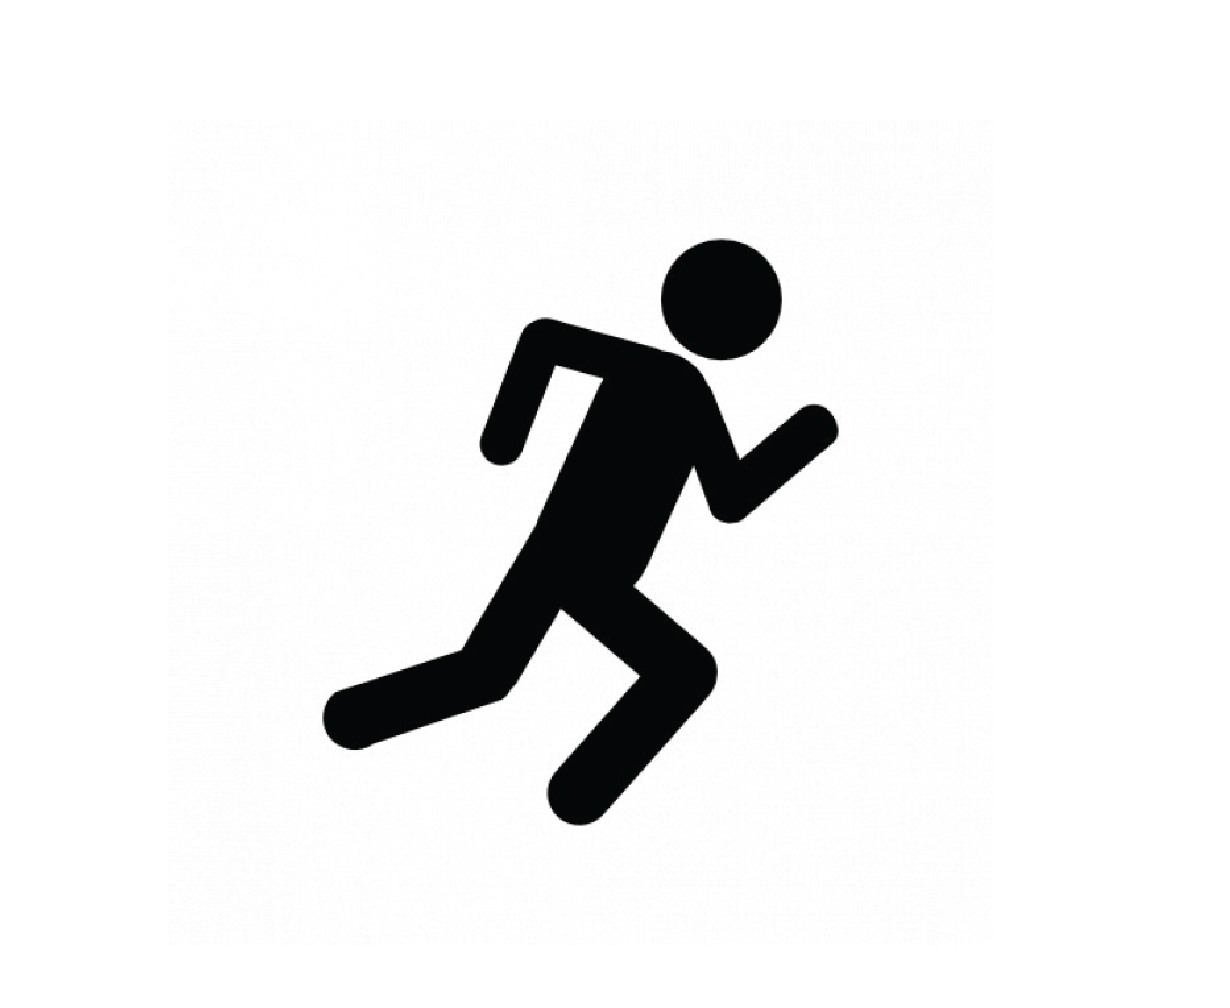 Вправо не ходить. Бегущий человечек. Значок бегущего человека. Человек убегает. Пиктограмма бежит.